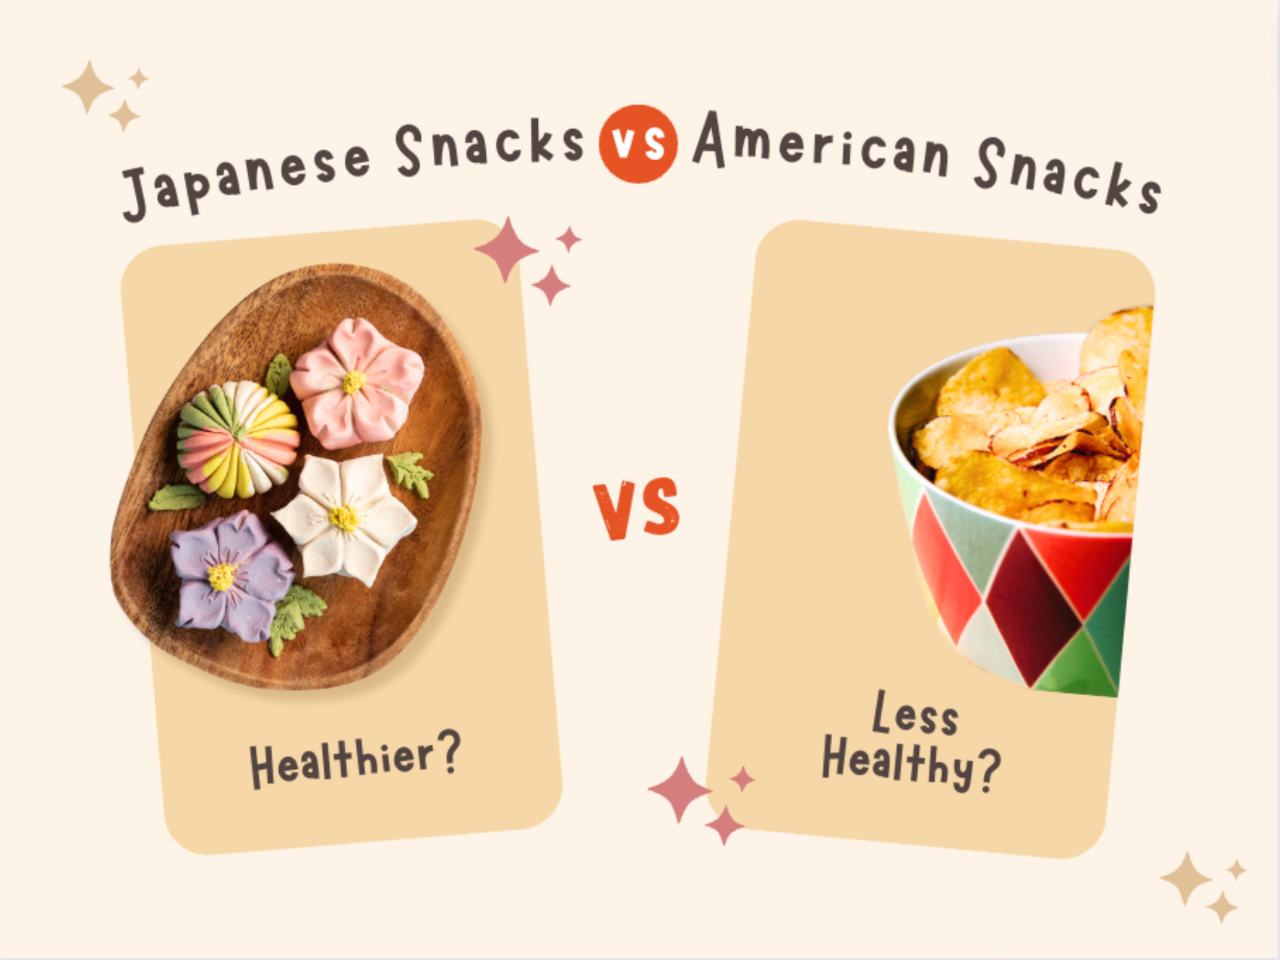 Japanese Snacks vs. American Snacks: Are Japanese Snacks Healthier than American Snacks?